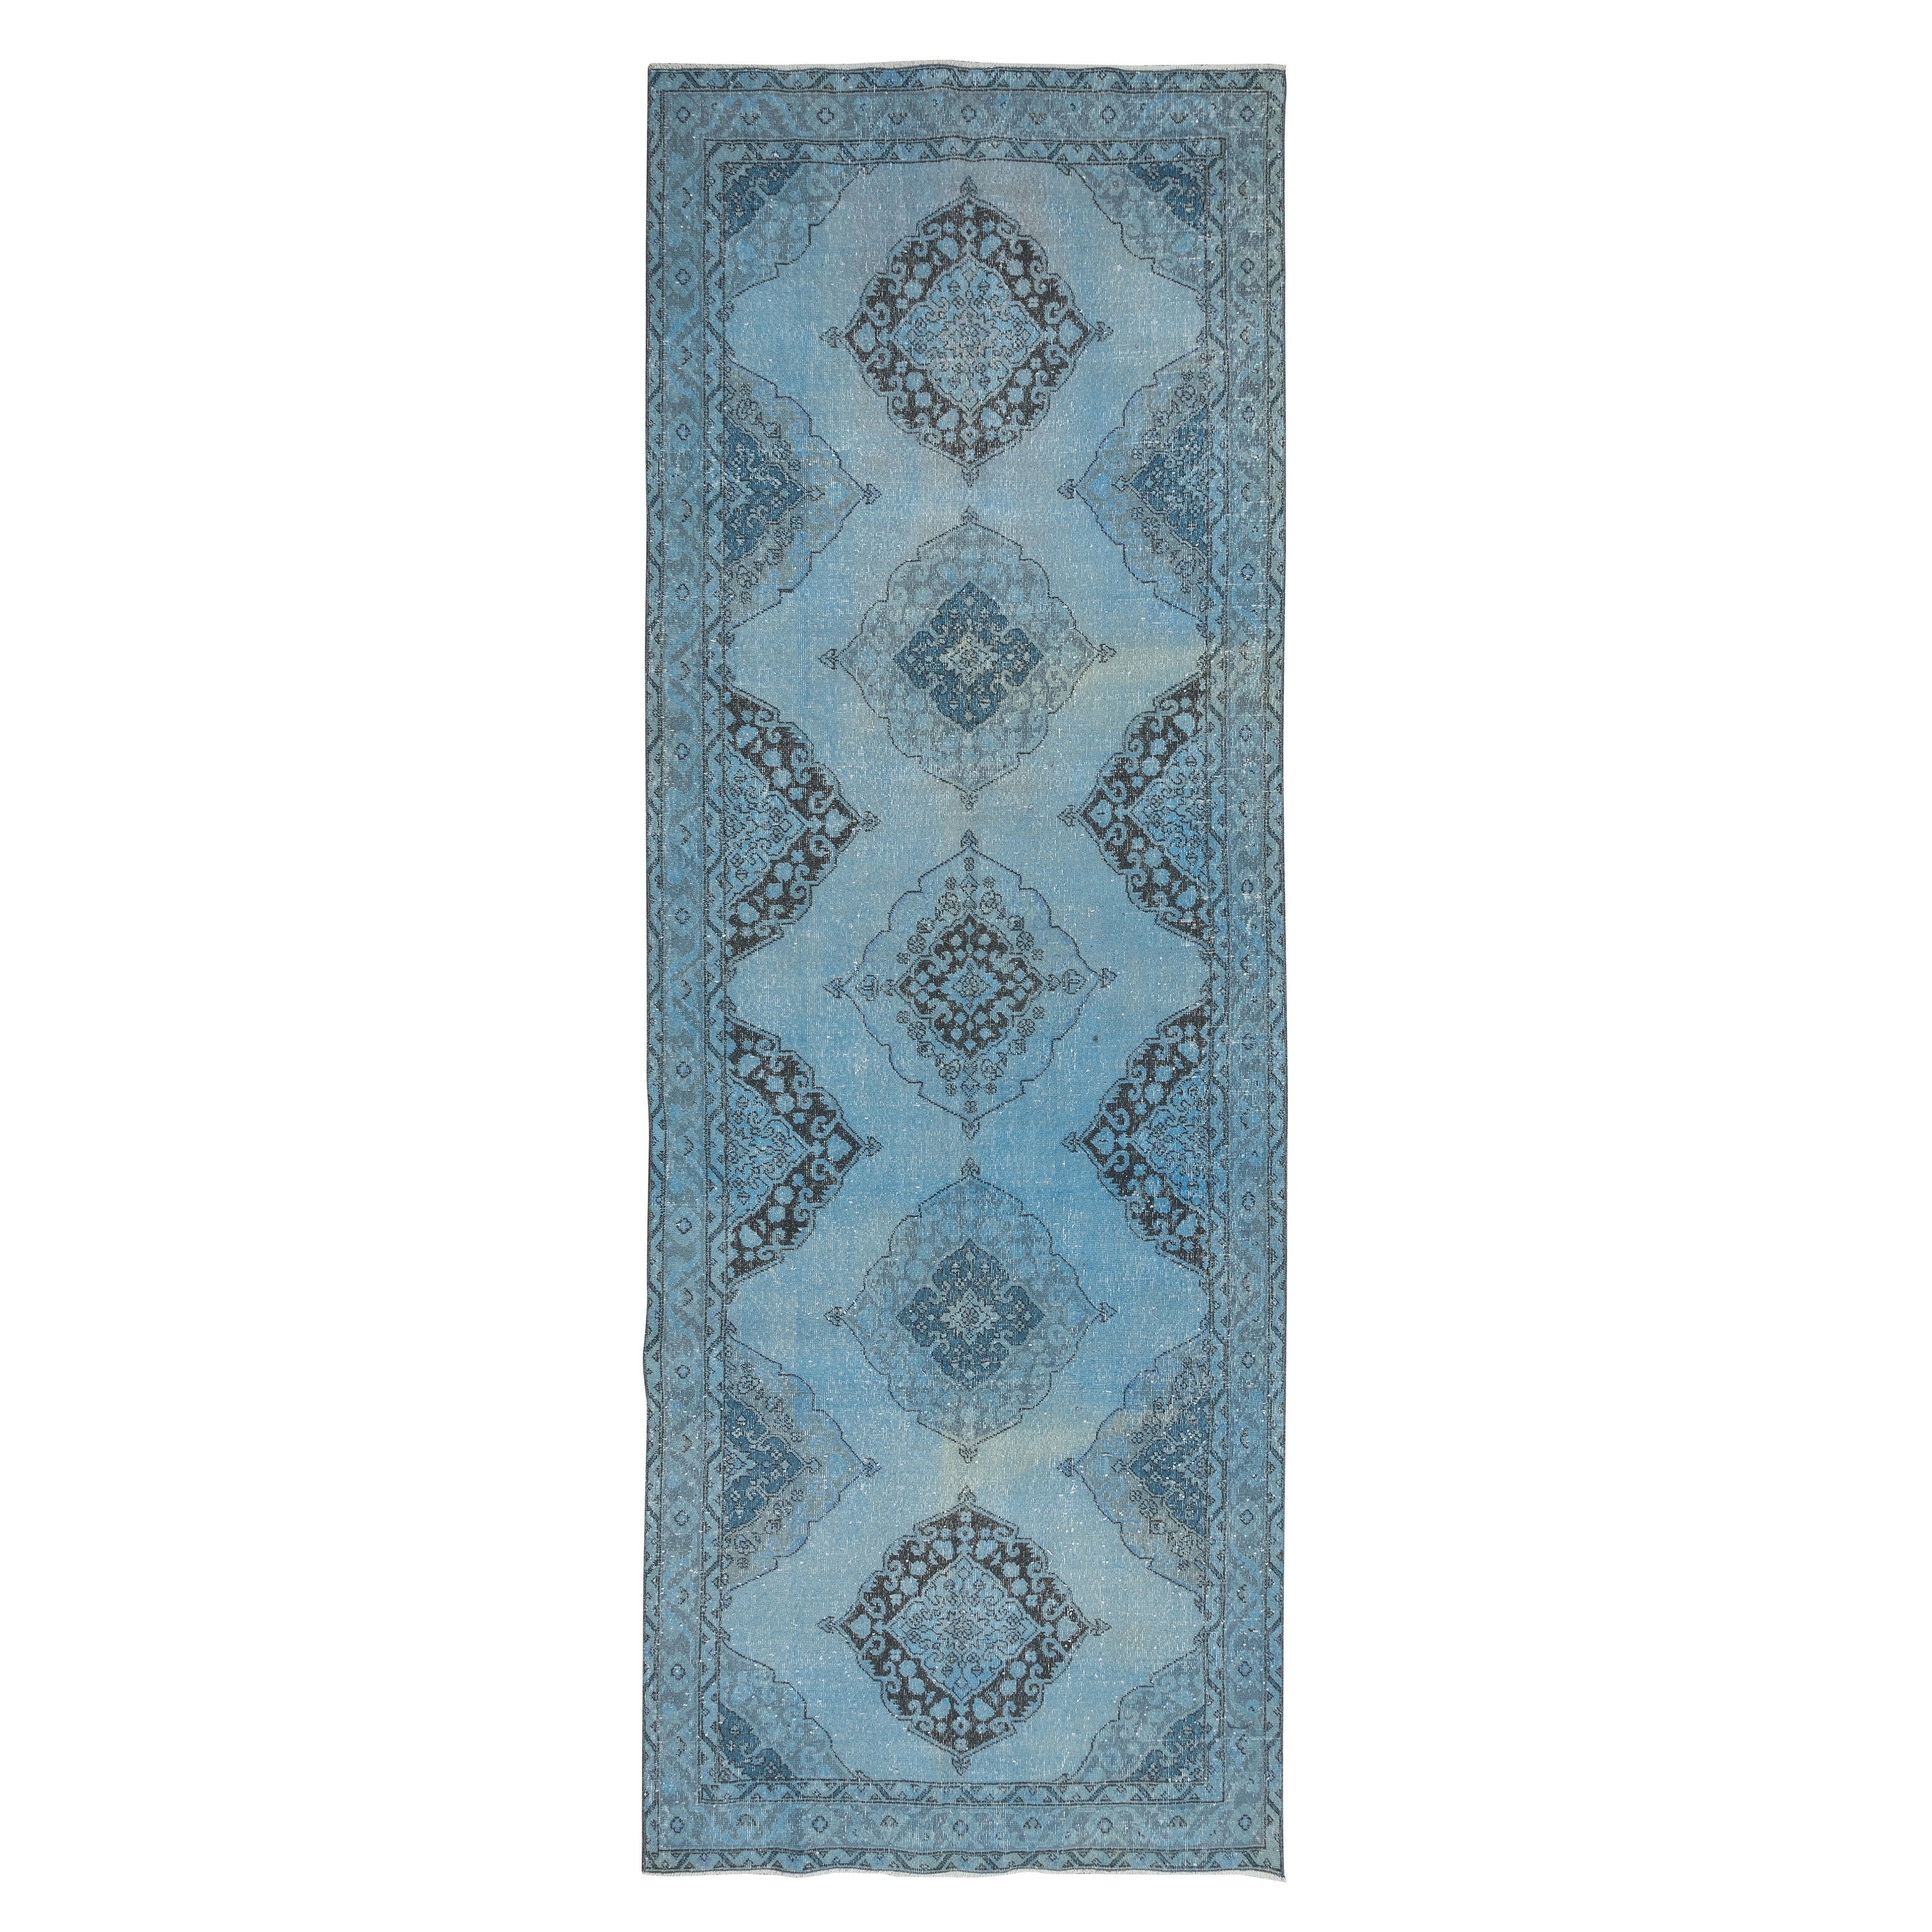 4.6x12.6 Ft Handmade Runner Rug Kitchen, Light Blue Corridor Carpet for Hallway For Sale